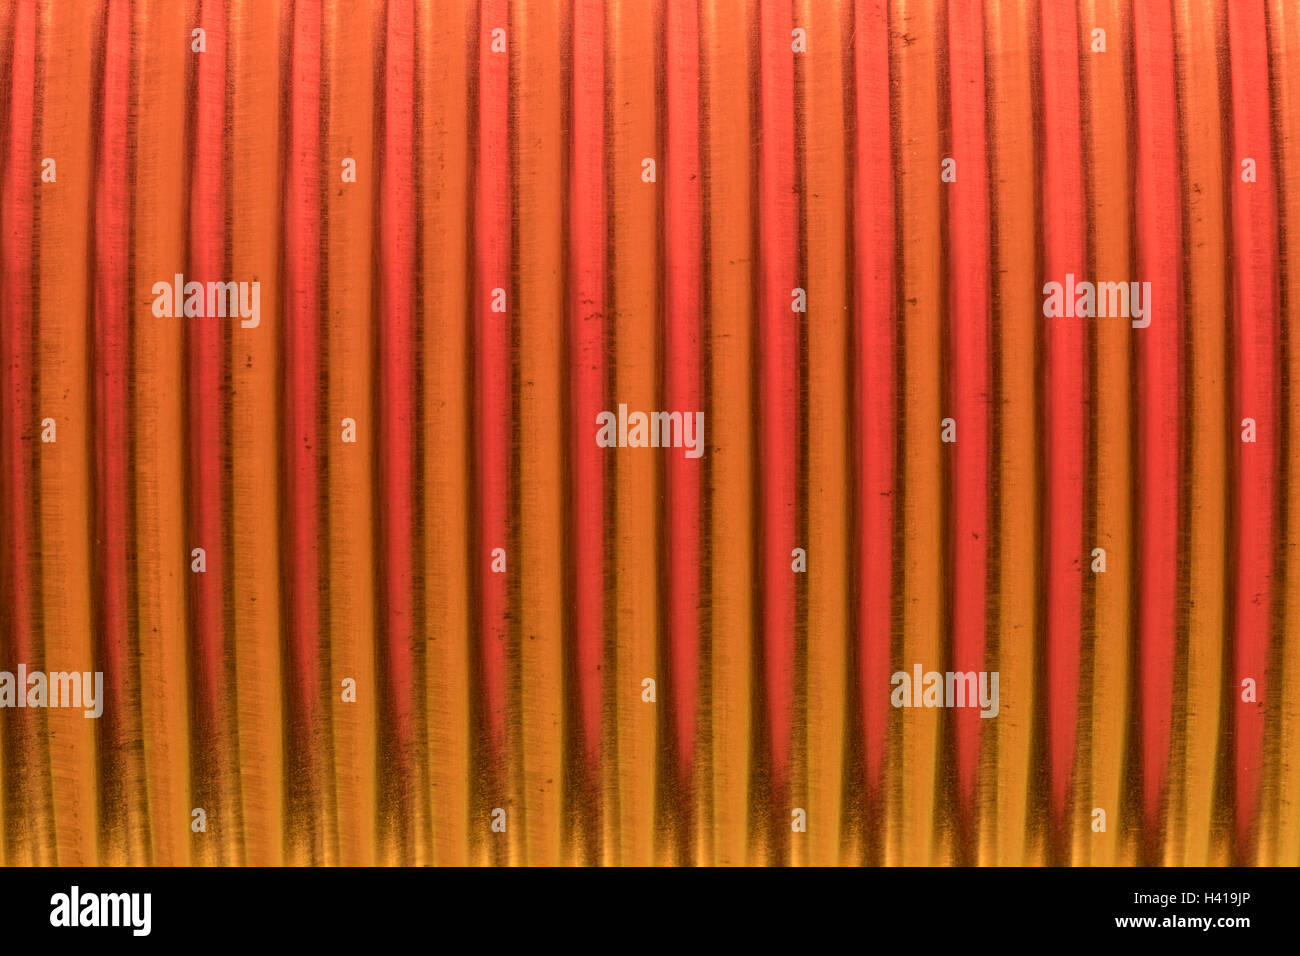 Abstraktes Bild mit Metall-/Blechdose Stärkung Bergrücken (eigentlich eine gebackene Bohnen tin) mit leuchten rot-orange farbigem Licht. Abstrakte Stahl kann. Stockfoto